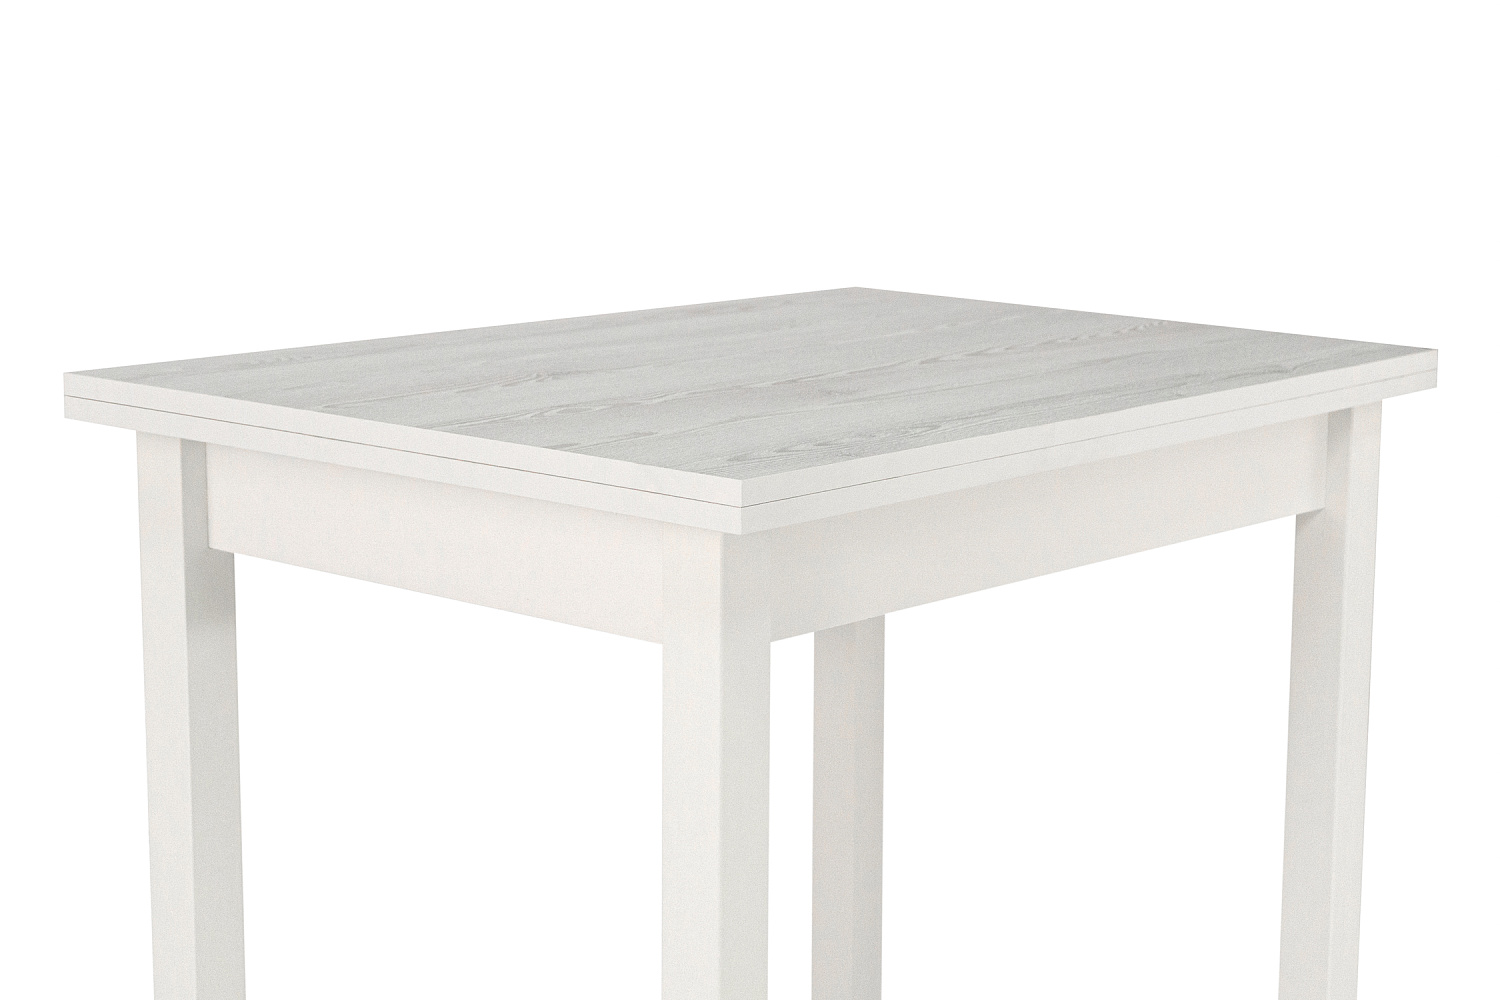 Стол Боровичи-мебель стол обеденный с ящиком белый / сосна белая